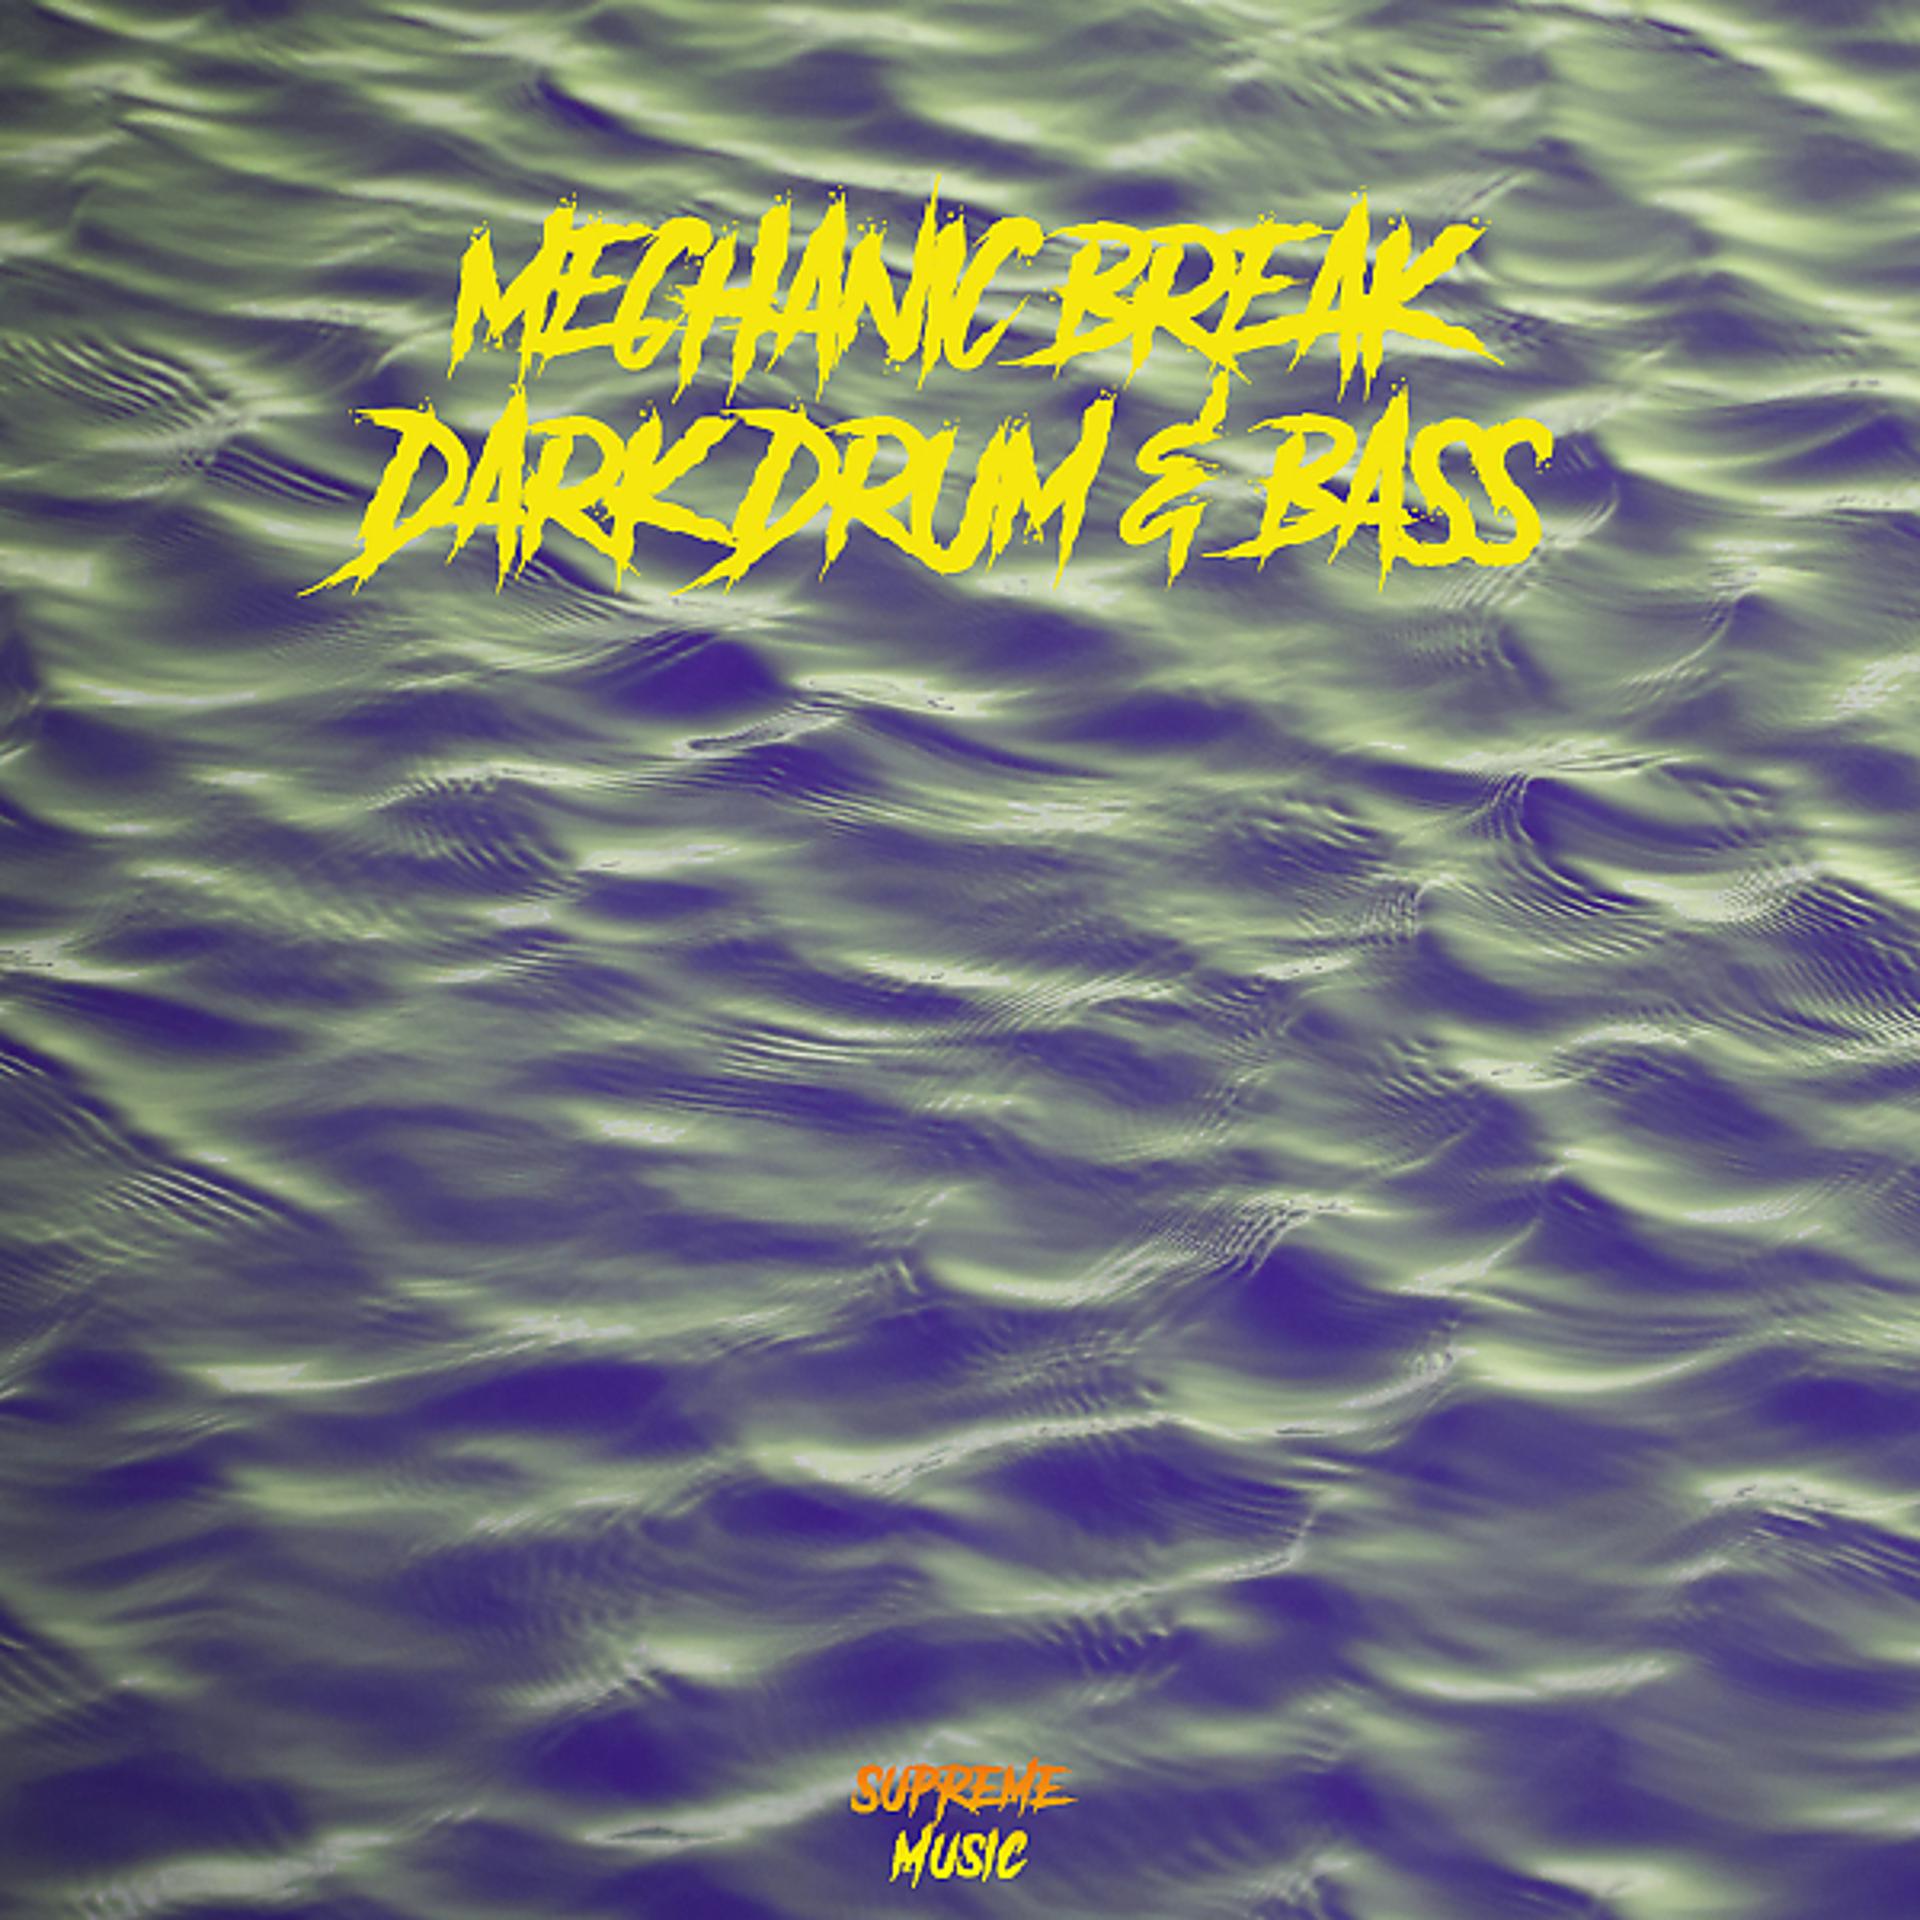 Постер альбома Dark Drum & Bass